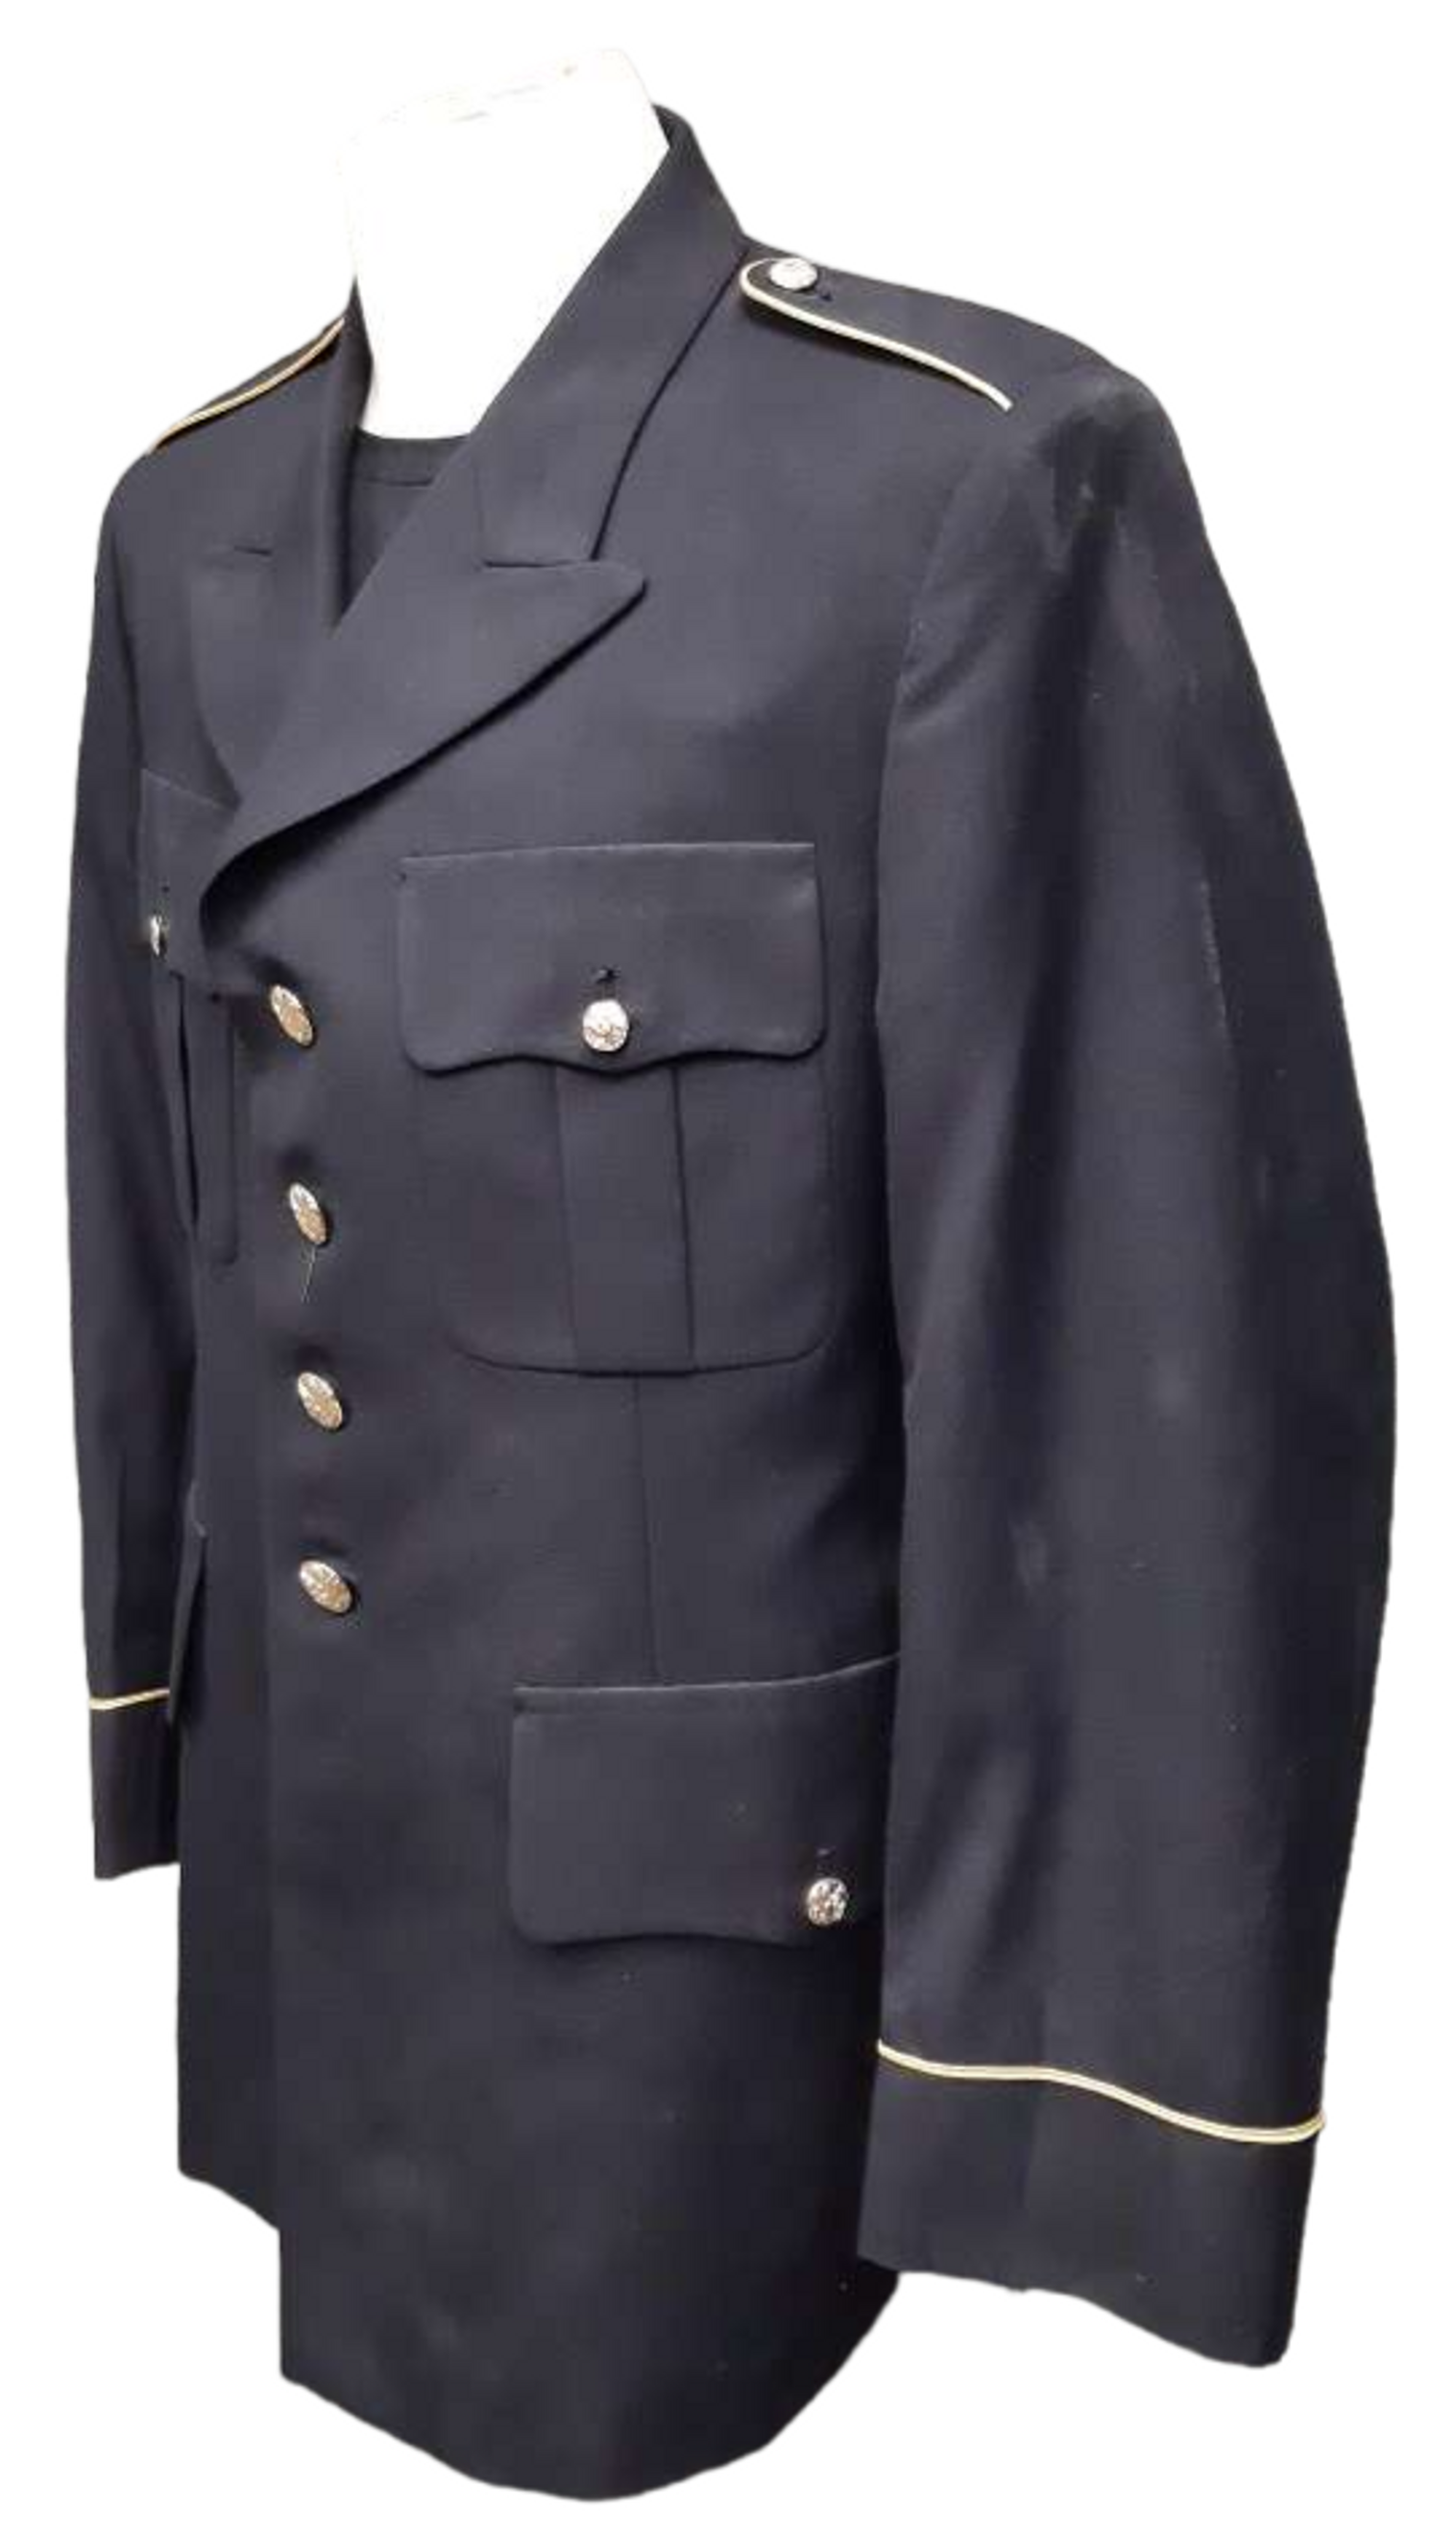 US Armed Forces Dress Blue Jacket - 41 Regular